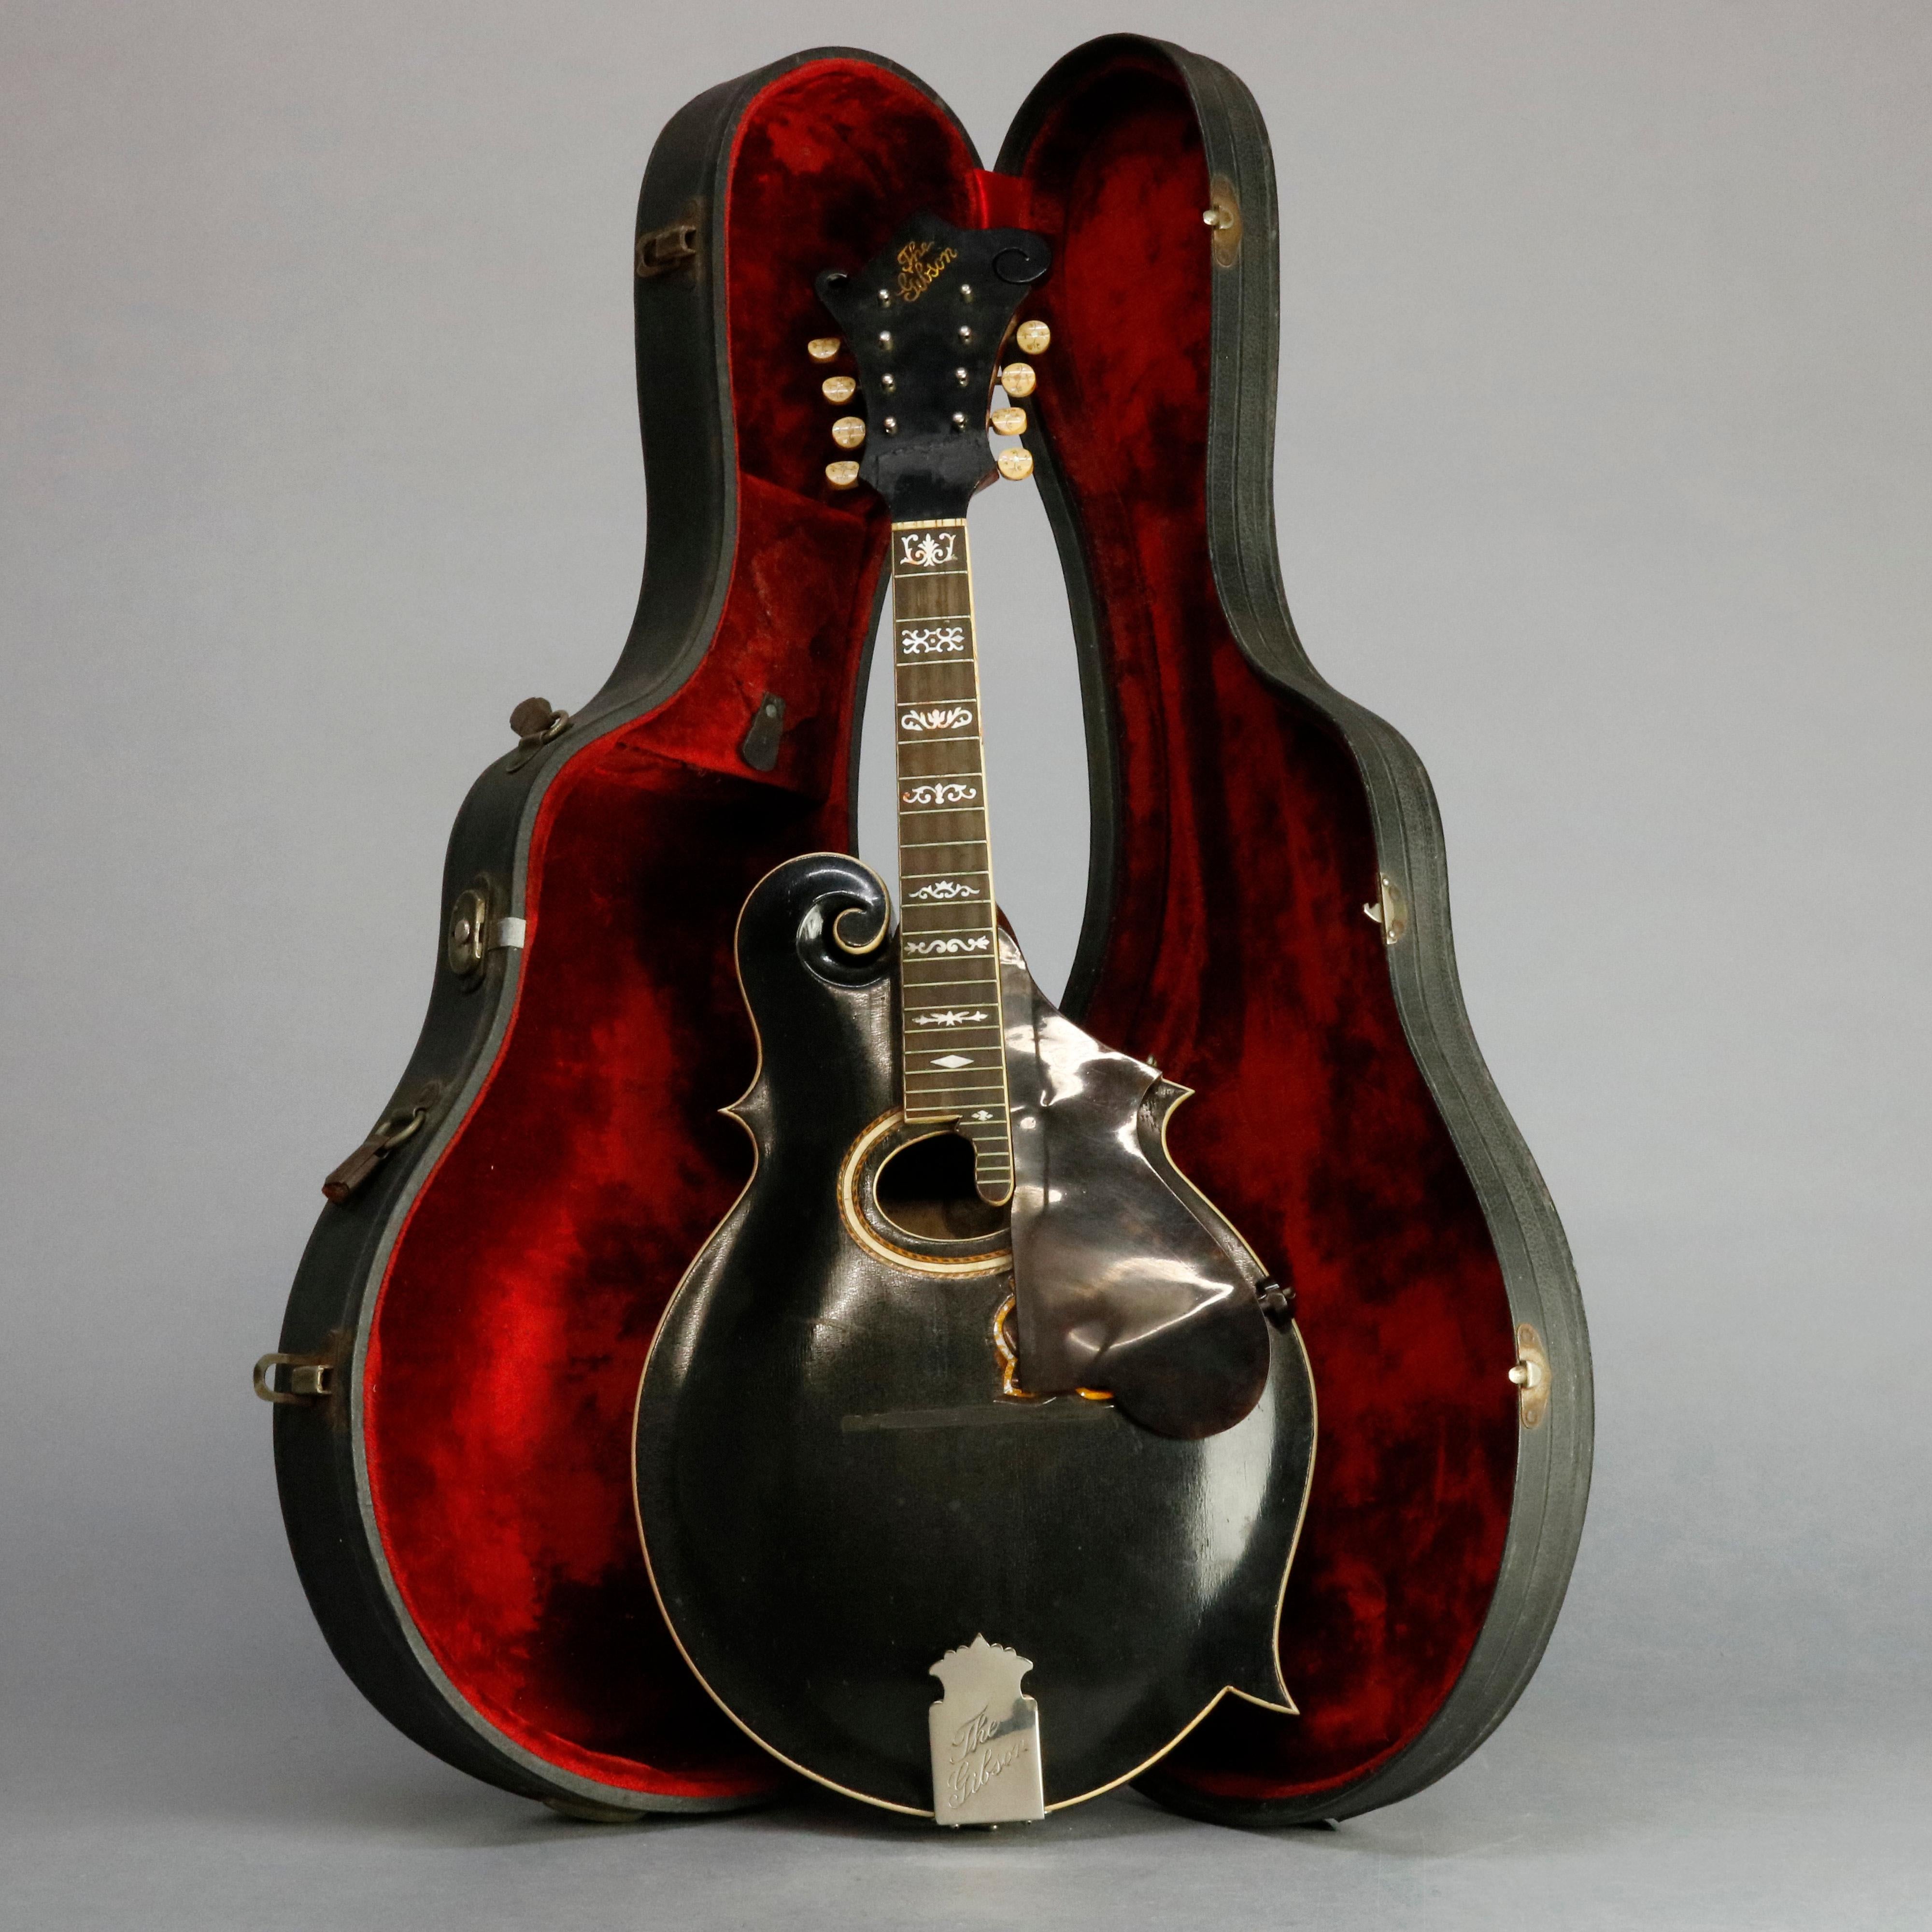 An antique Gibson Mandolin-Guitar and case, 